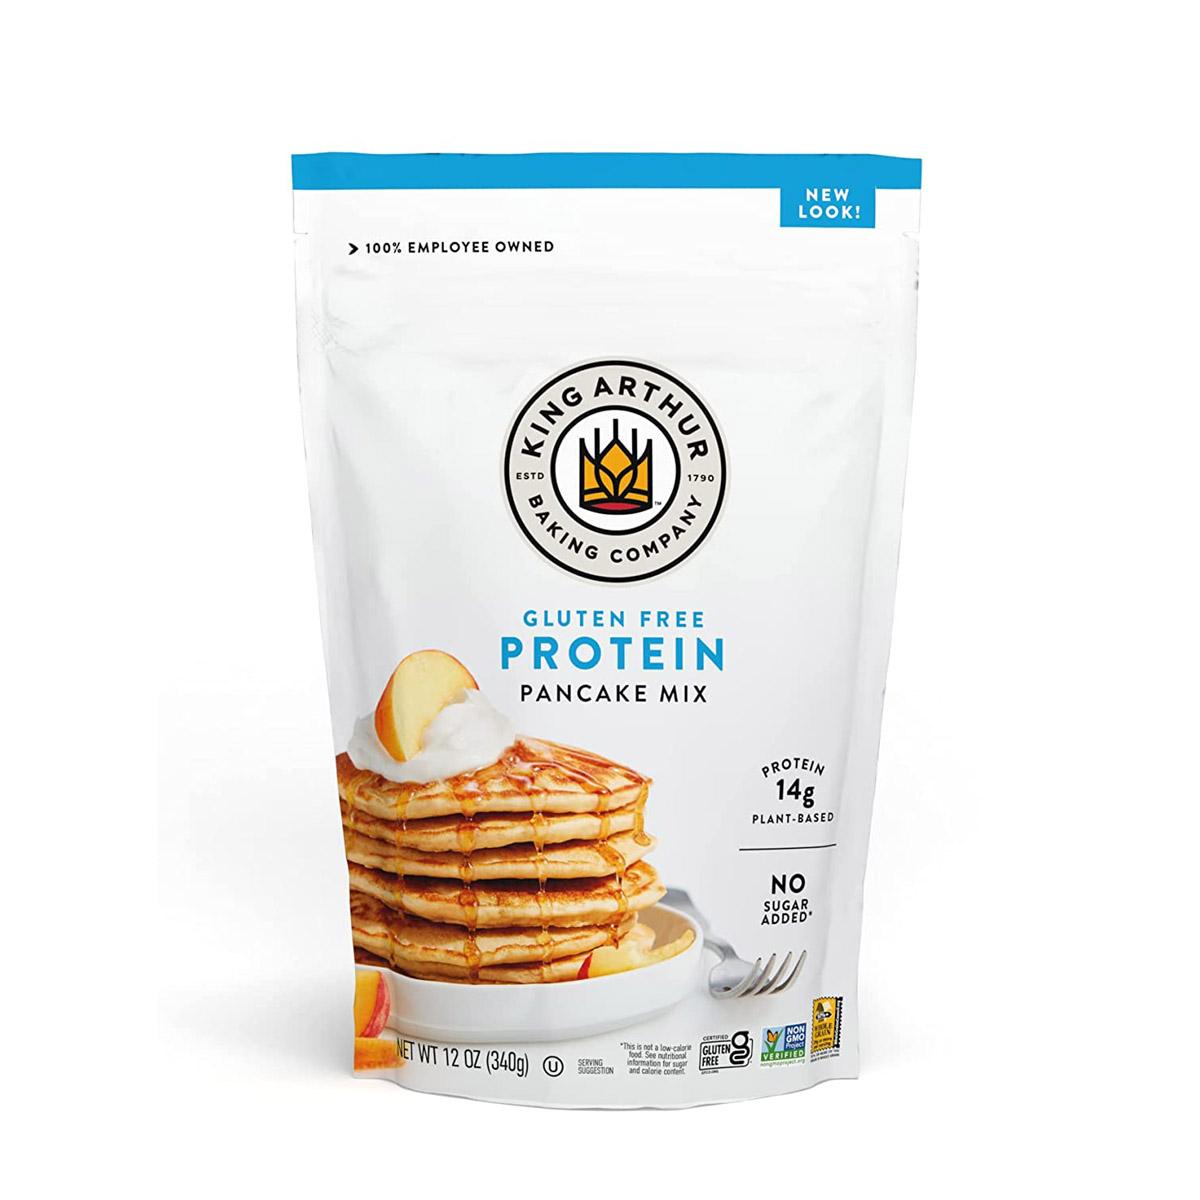 King Arthur Flour No Gluten Protein Pancake Mix for $2.55